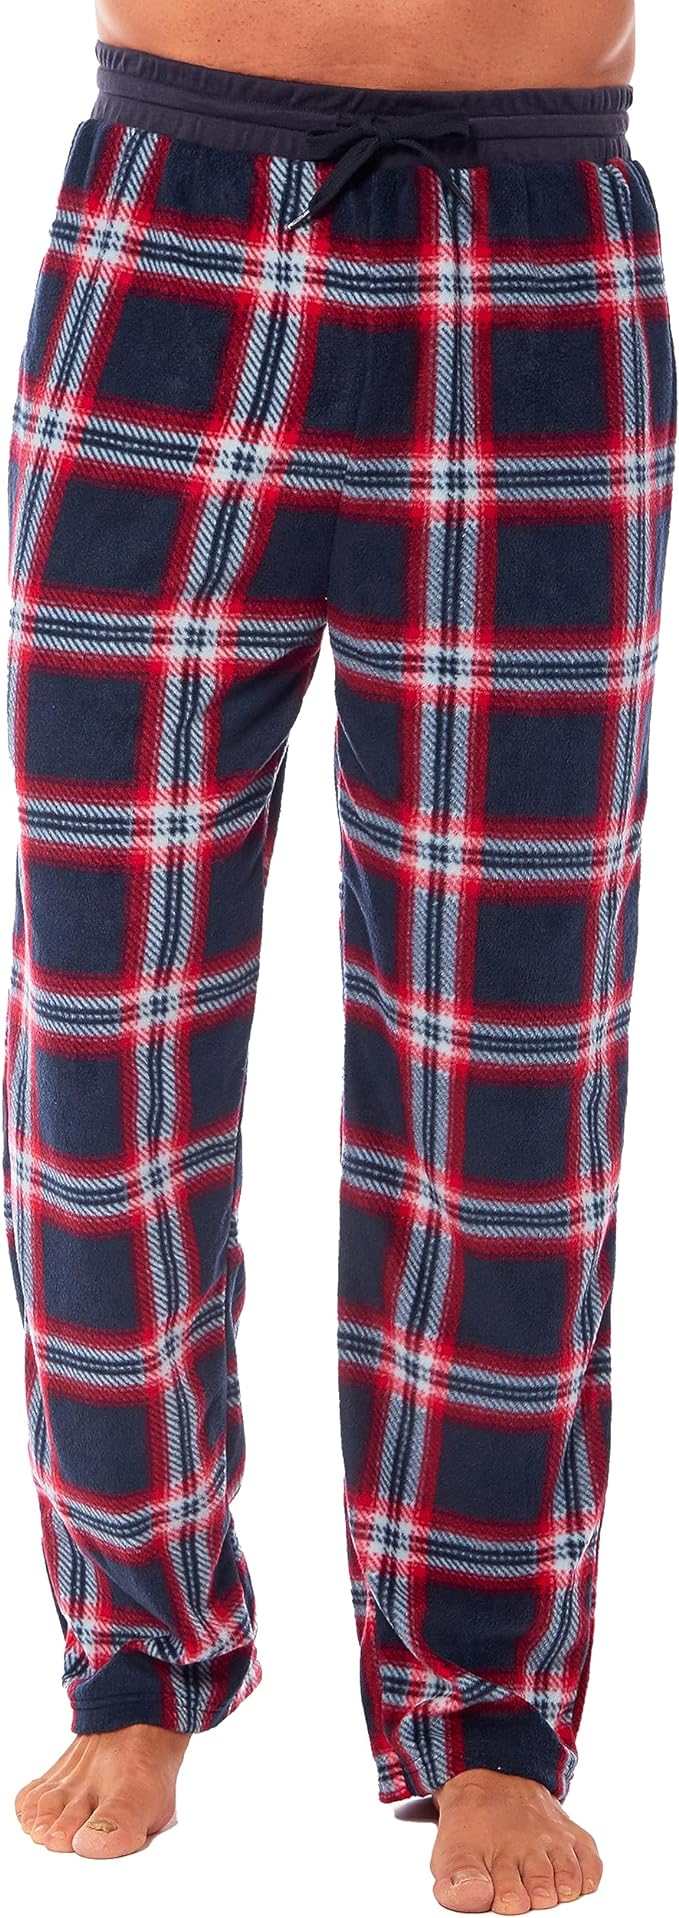 Men's Fleece Lounge Pants Super Soft PJ Sleepwear Nightwear Check